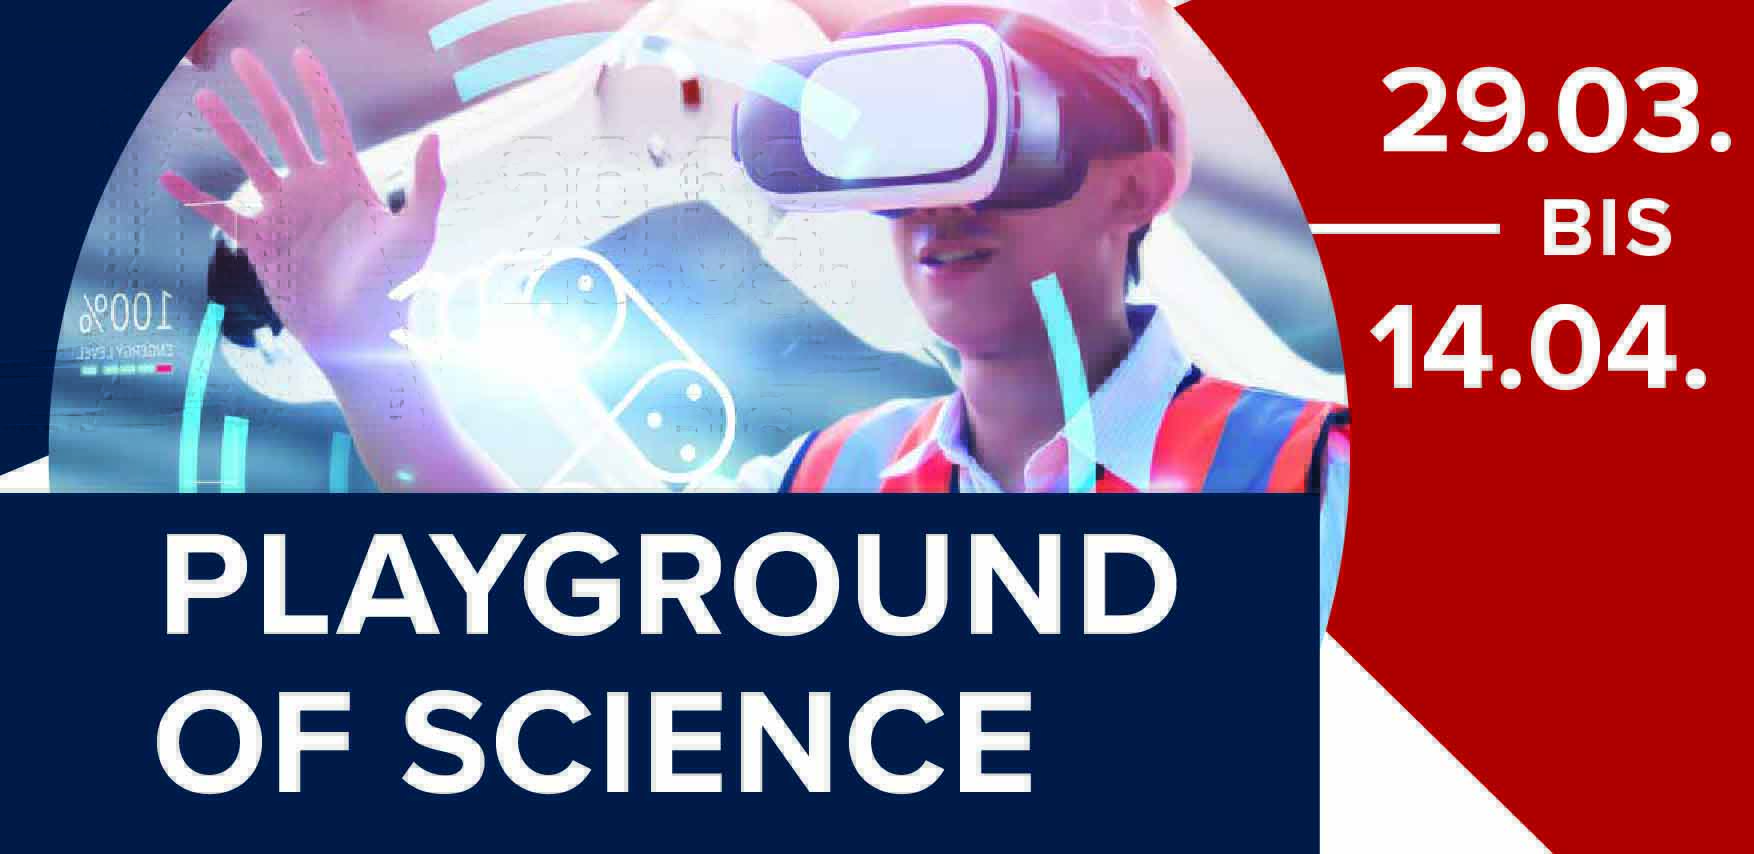 Ein Plakat auf dem die Daten sowie ein Mann mit VR-Brille für eine Sonderausstellung im Industriemuseum 